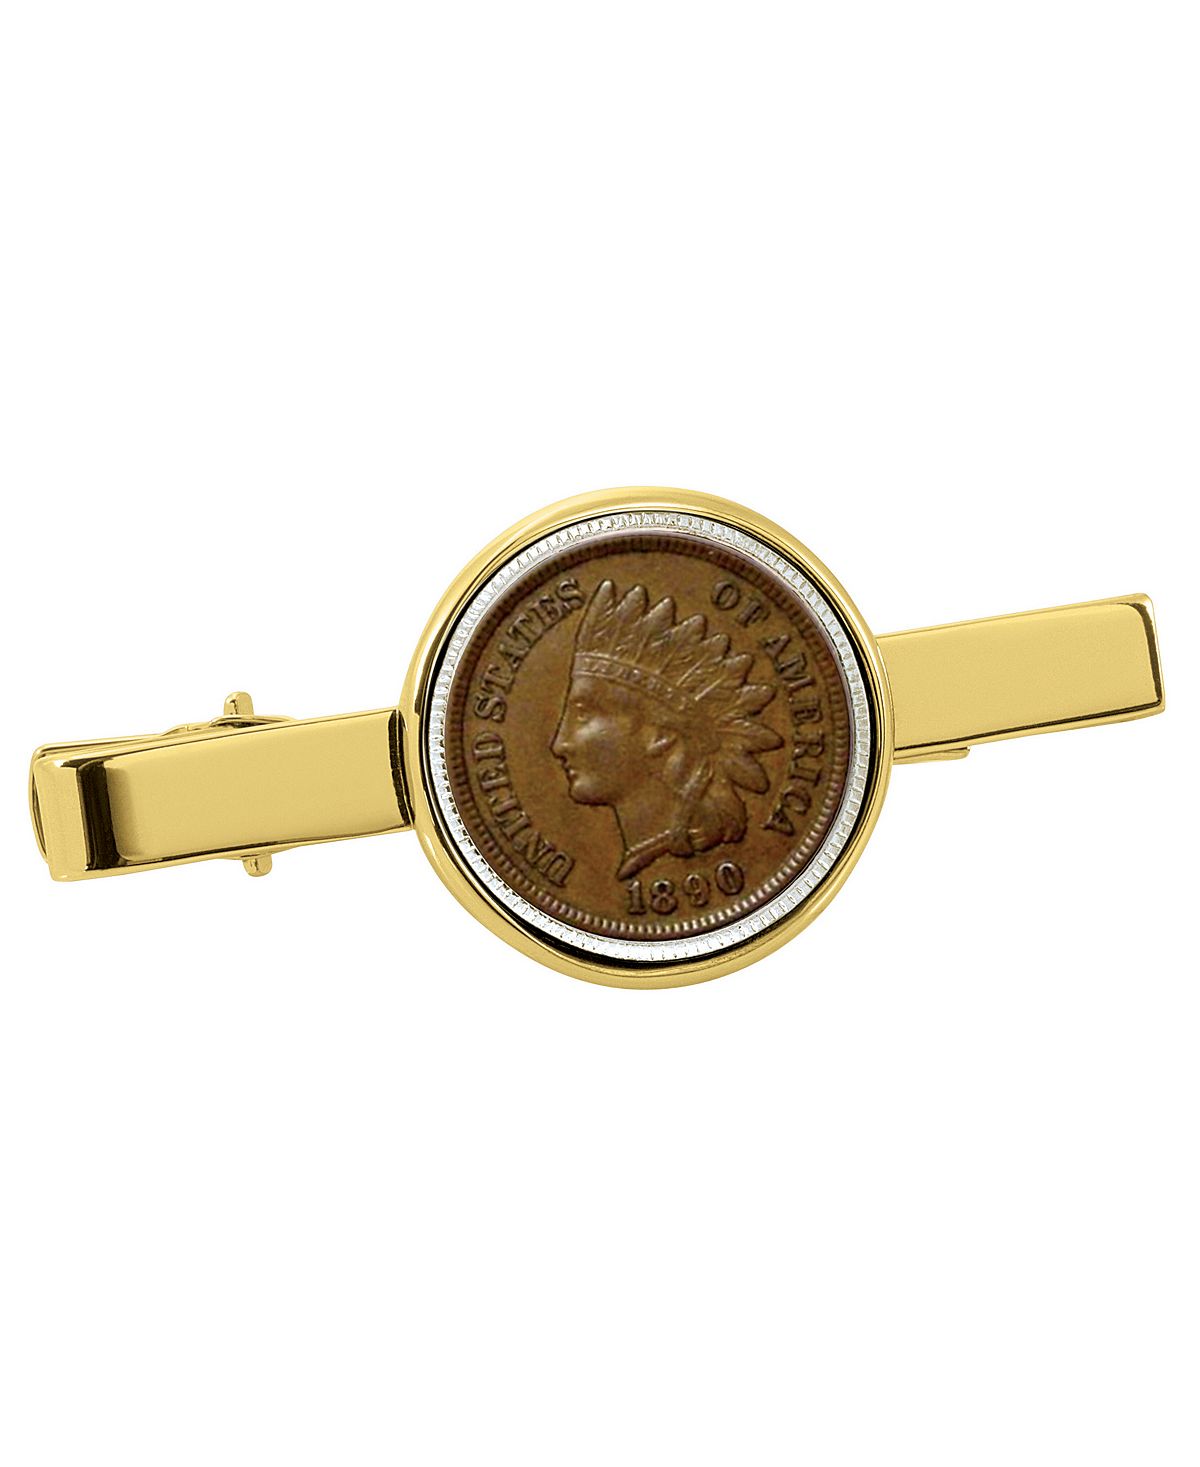 Зажим для галстука в виде индийской монеты-пенни 1800-х годов American Coin Treasures зажим для галстука для австрийской монеты номиналом 2 евро american coin treasures